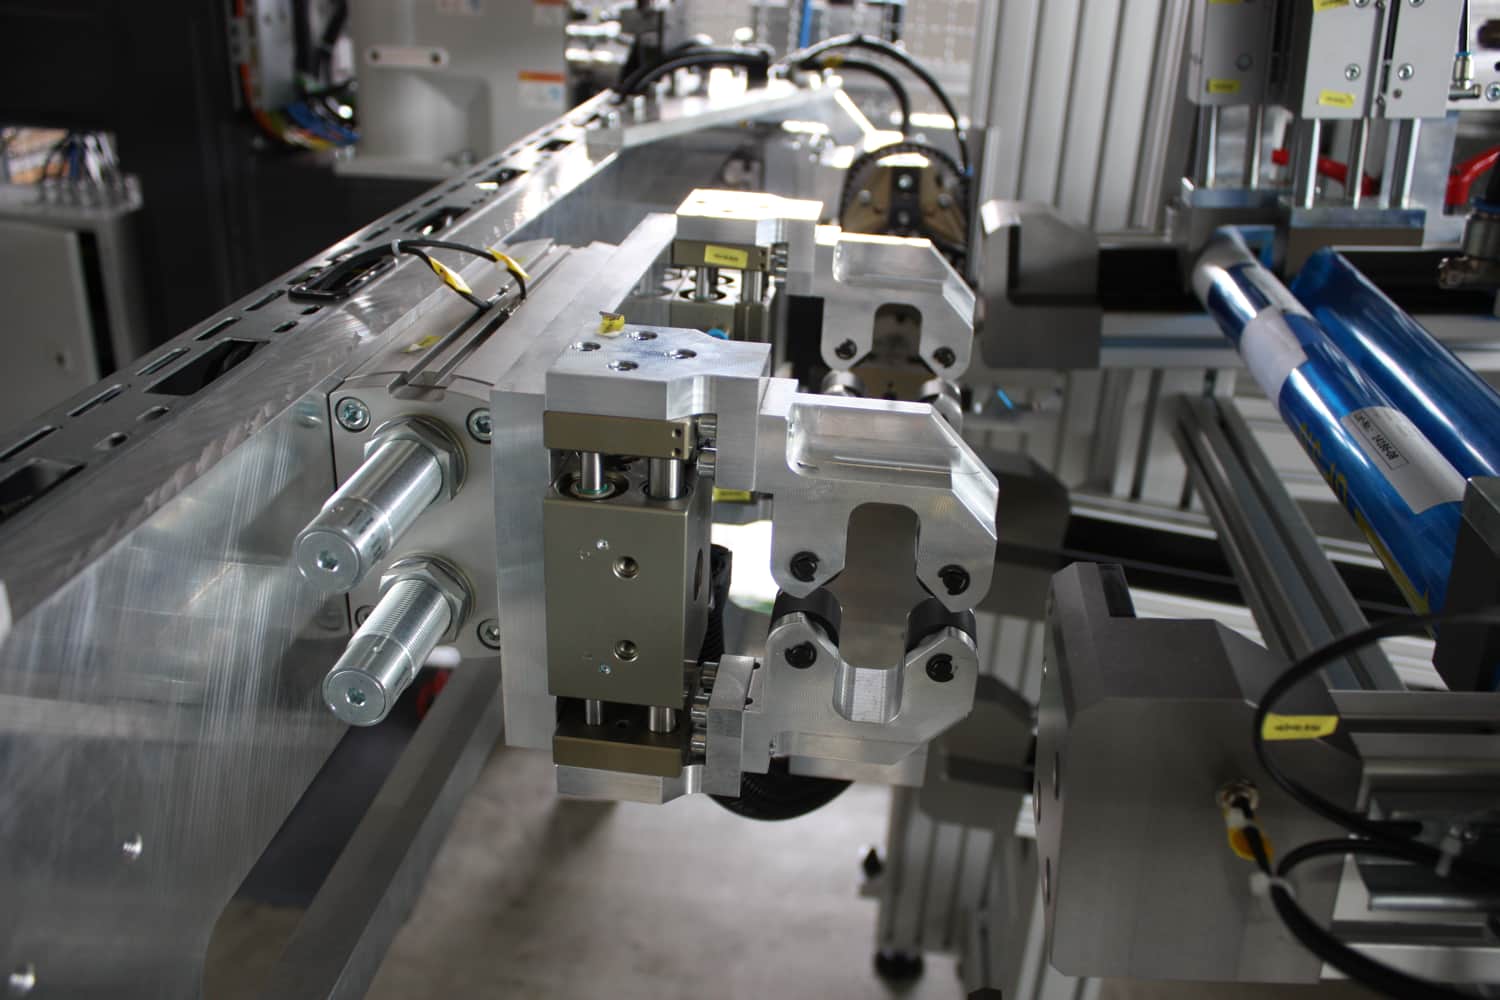  Beispiel Roboterzelle für in der Großserienfertigung von Klein-Bauteilen Automatische Bauteilzuführung, -reinigung, optische Endprüfung und Verpackung in kundenspezifische Behältnisse 